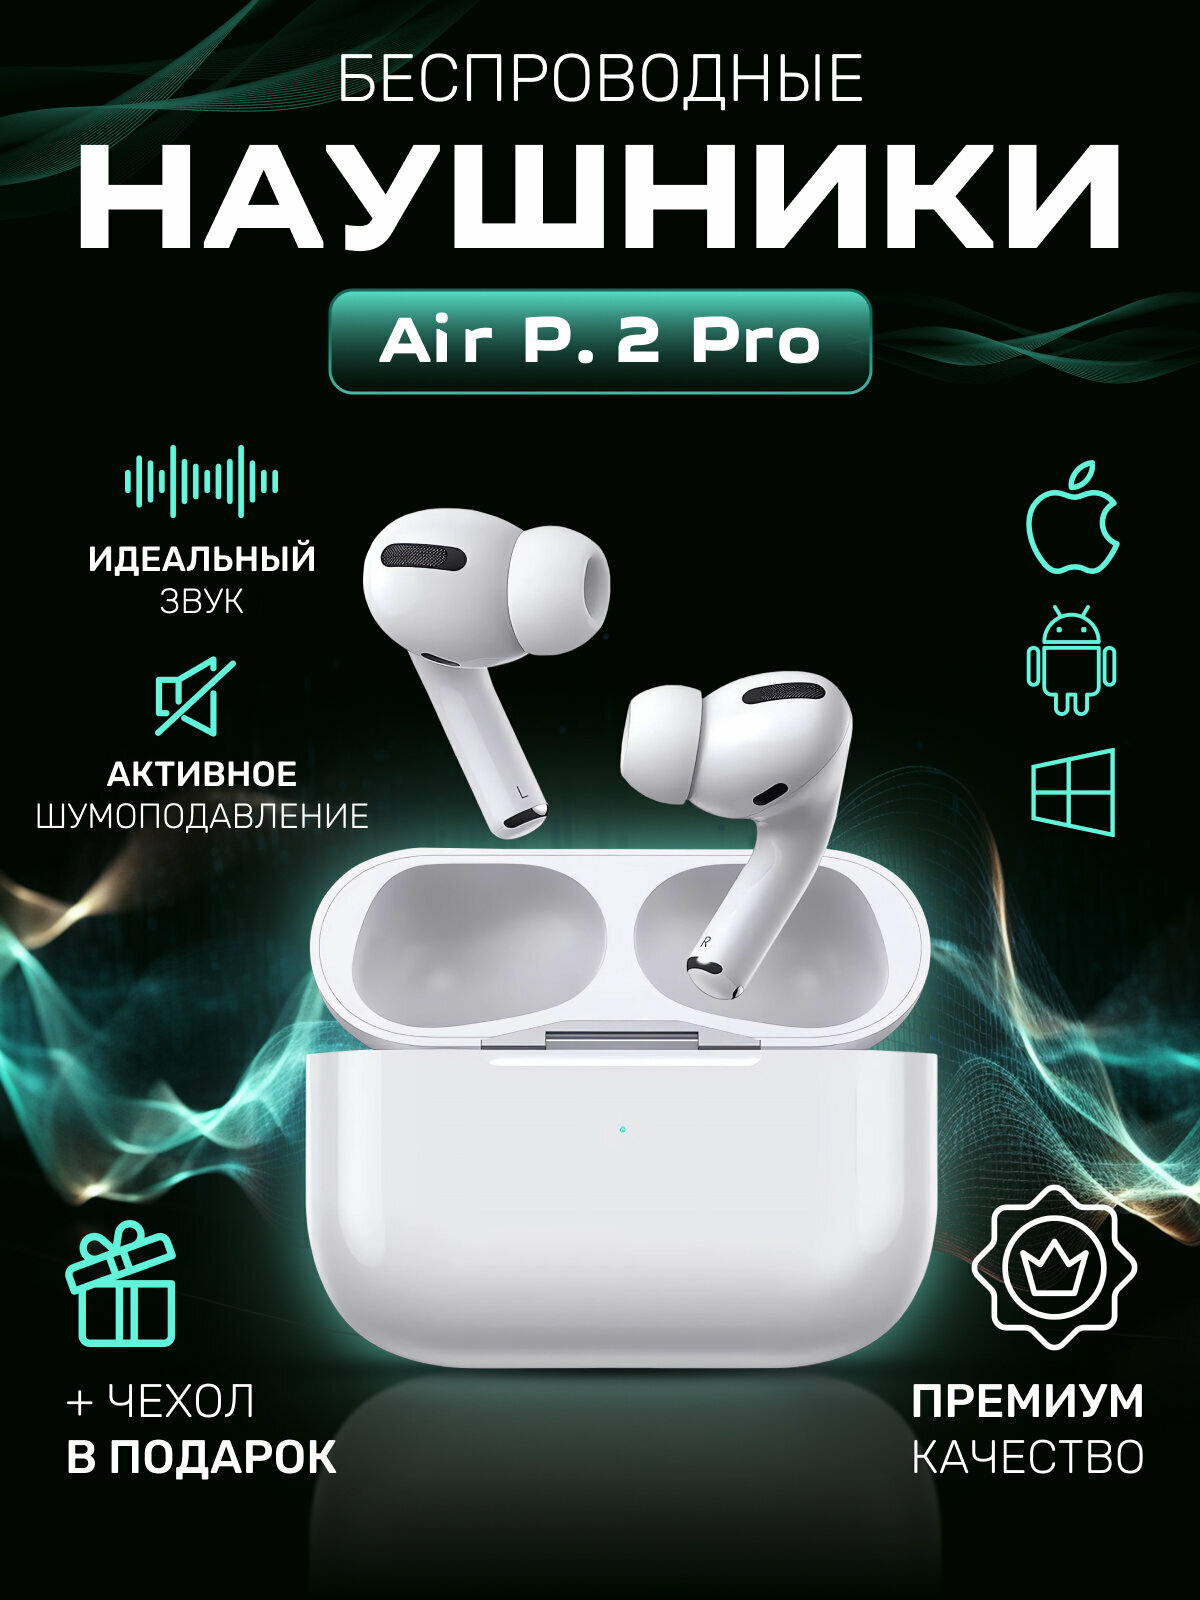 Беспроводные наушники AIR P. 2 PRO Bluetooth для айфона для телефона для ПК с микрофоном PREMIUM